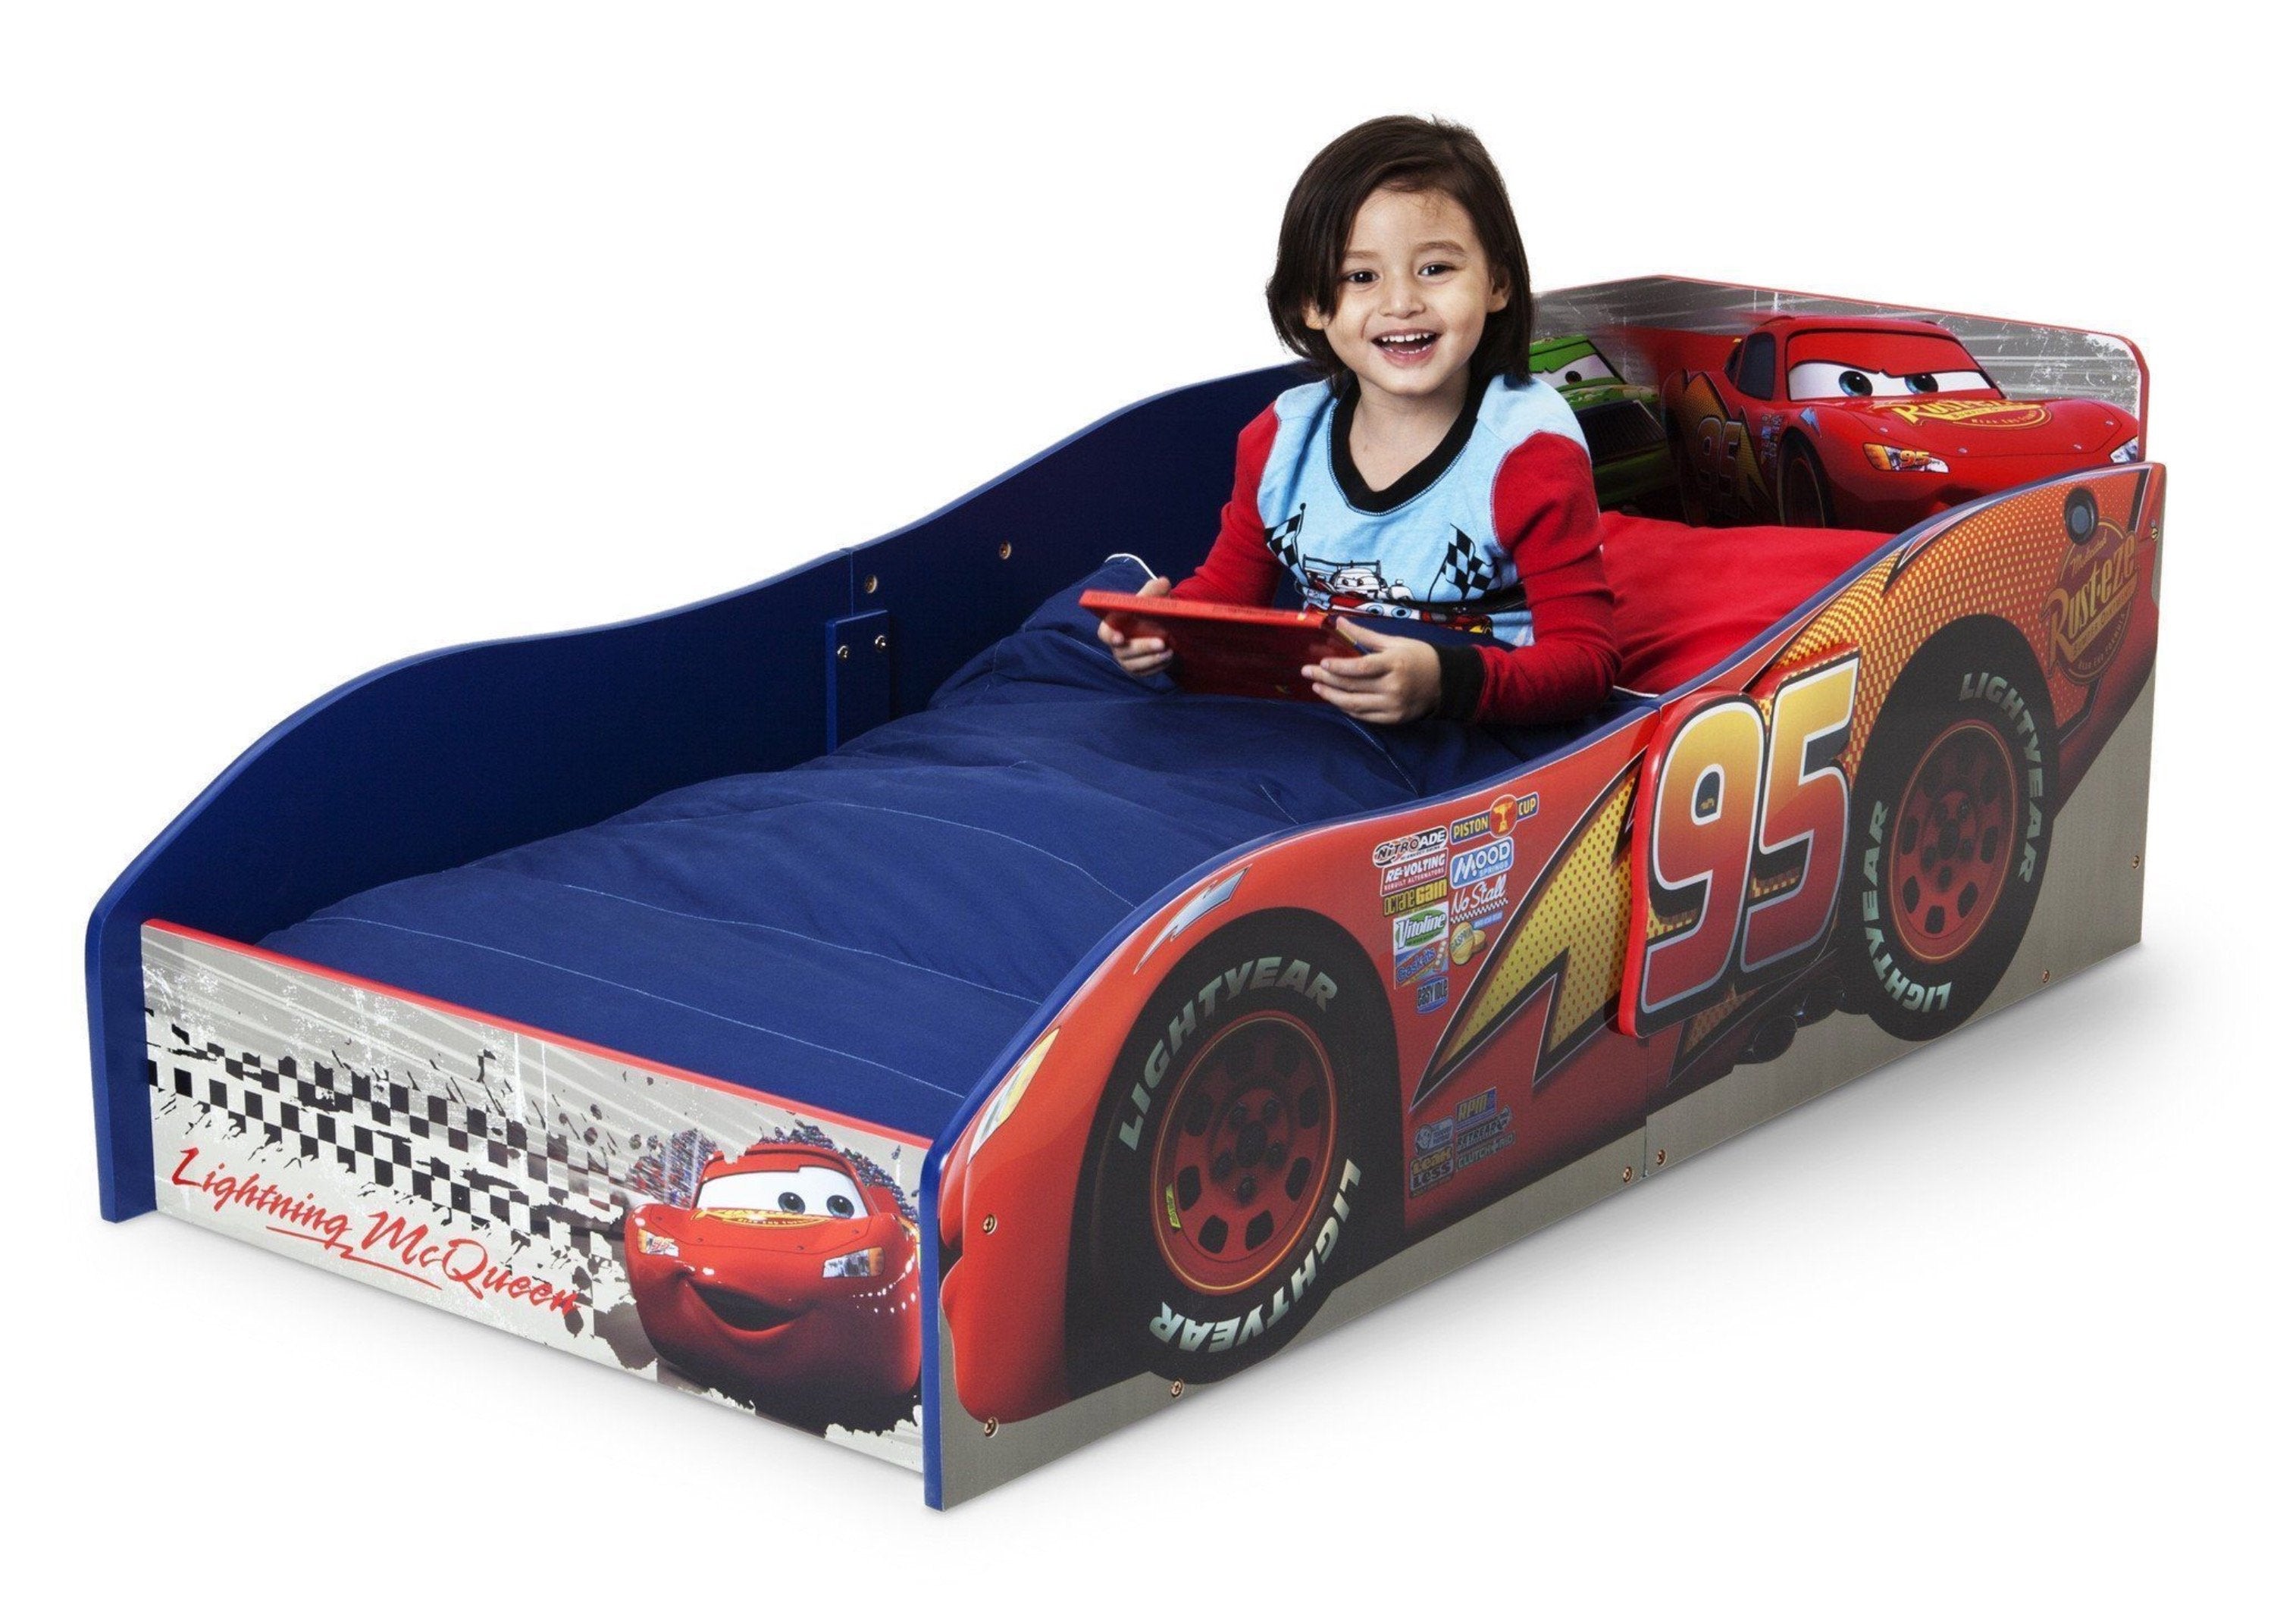 Cars Bed - Delta Children